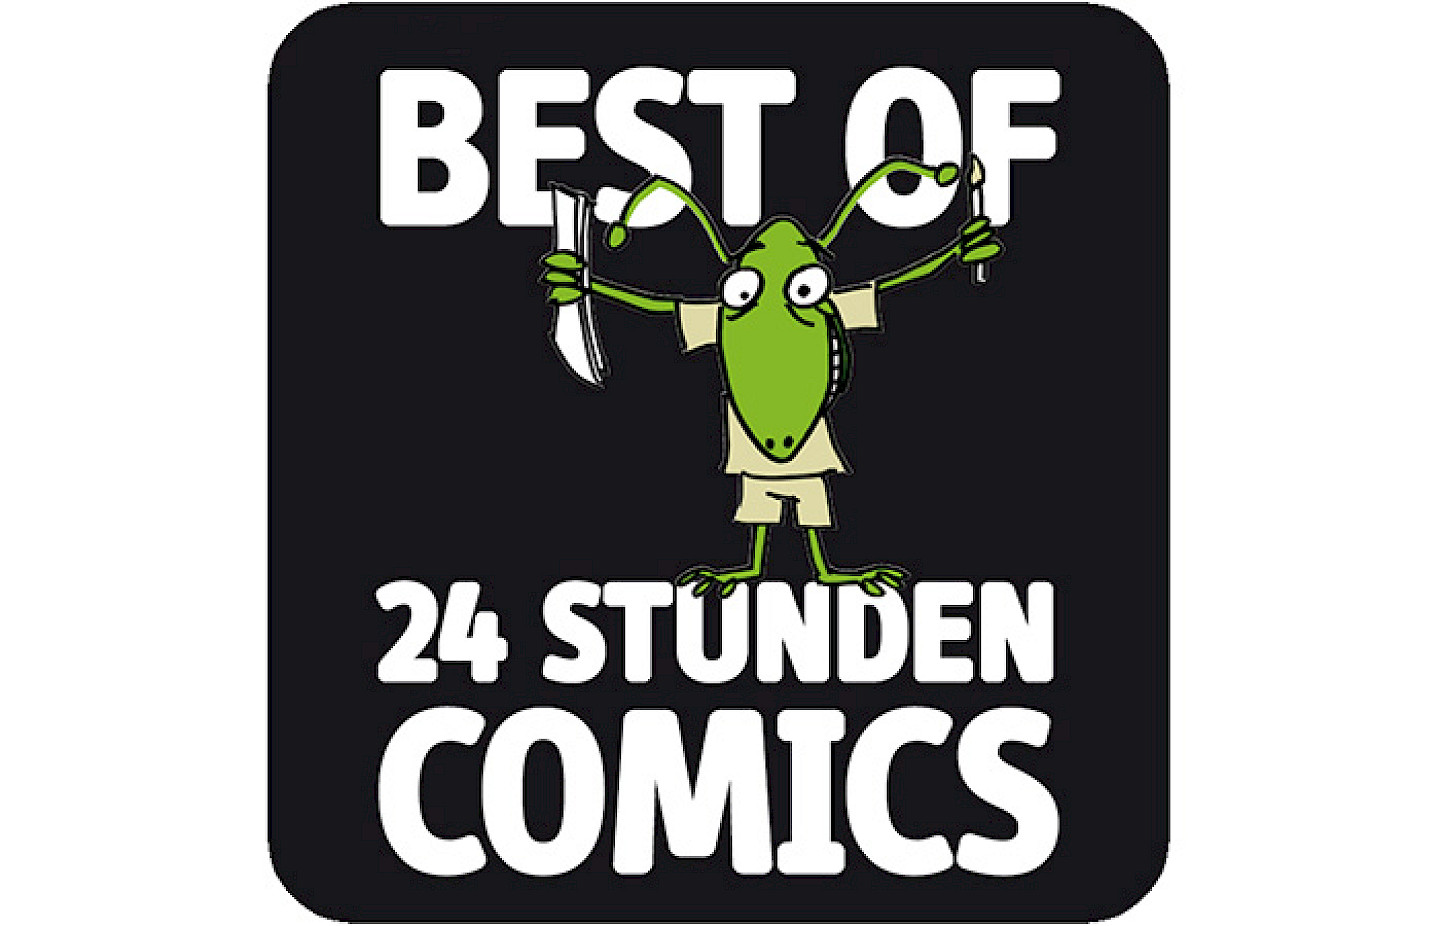 Best of 24 Stunden Comics 2017